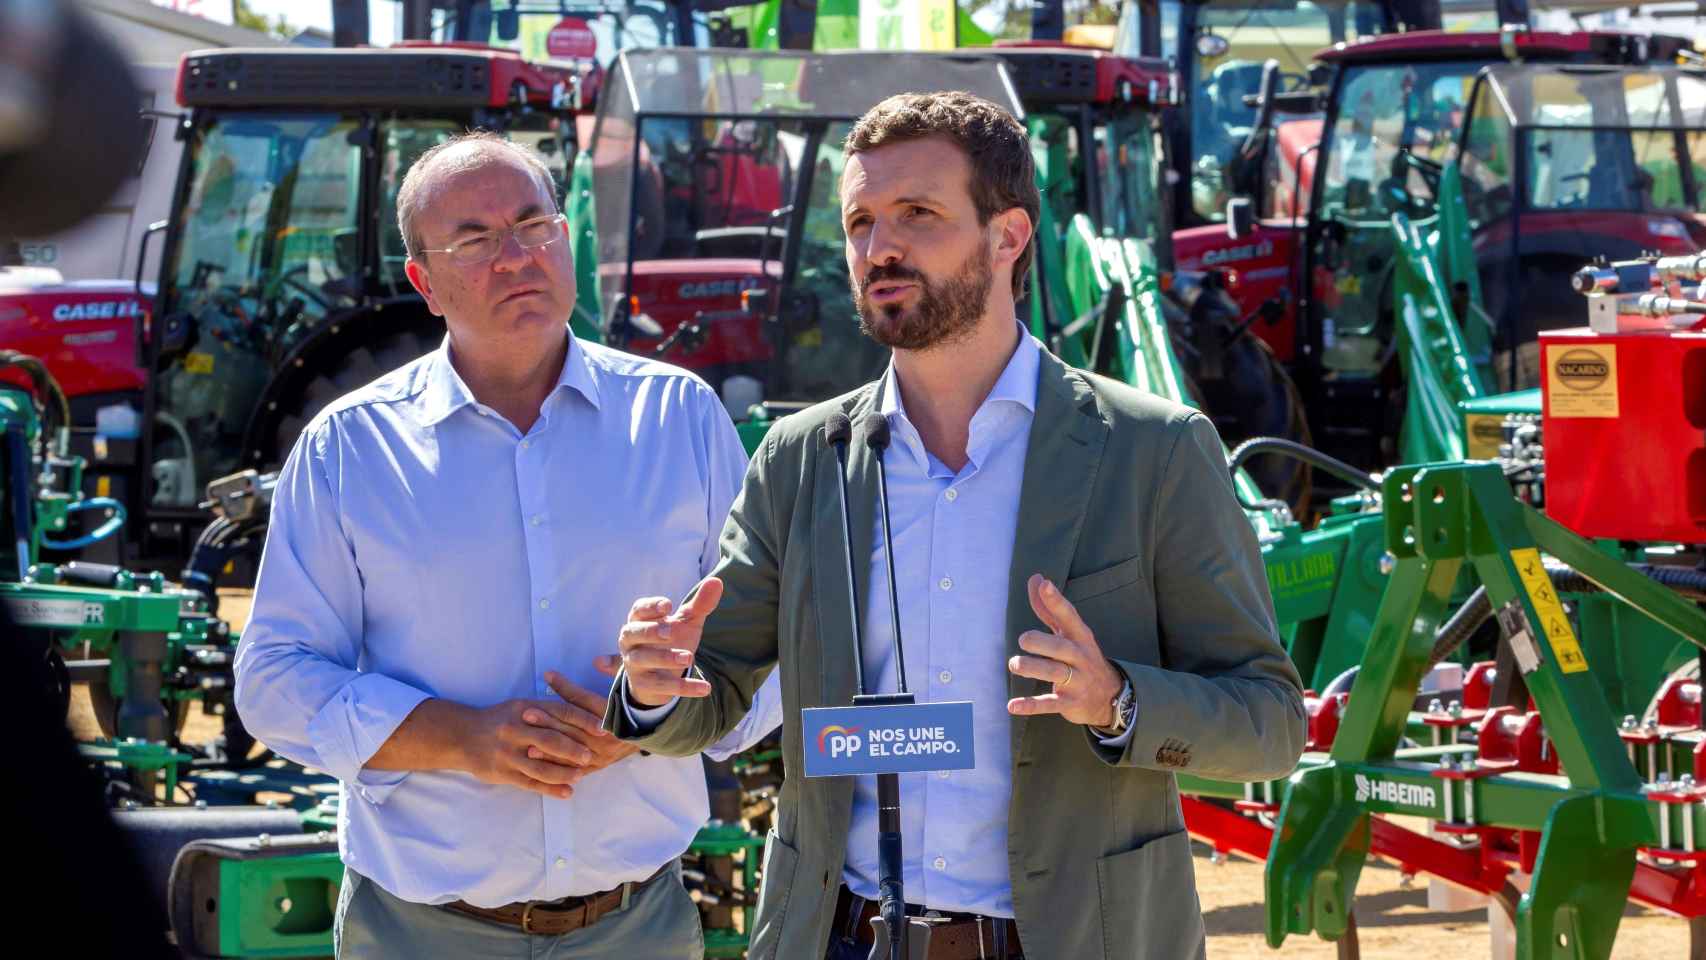 El líder del PP, Pablo Casado, interviene en presencia del líder del PP de Extremadura, José Antonio Monago, durante su visita a la Feria Internacional Ganadera de Zafra (Badajoz).